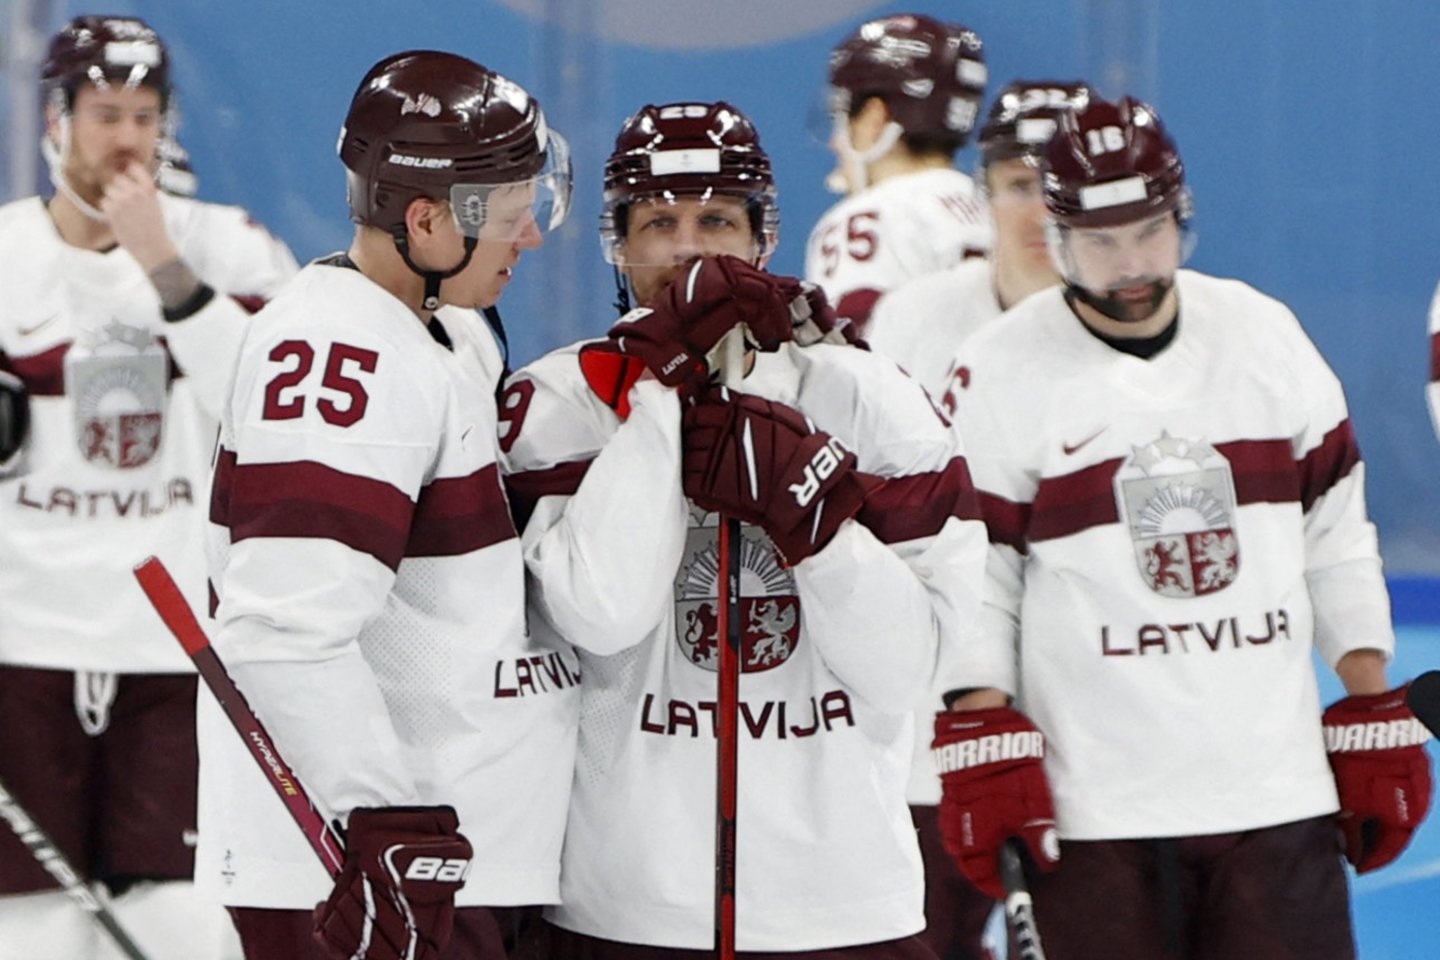 Latvijos ledo ritulio rinktinė pralaimėjo Čekijai.<br>Reuters/Scanpix nuotr.